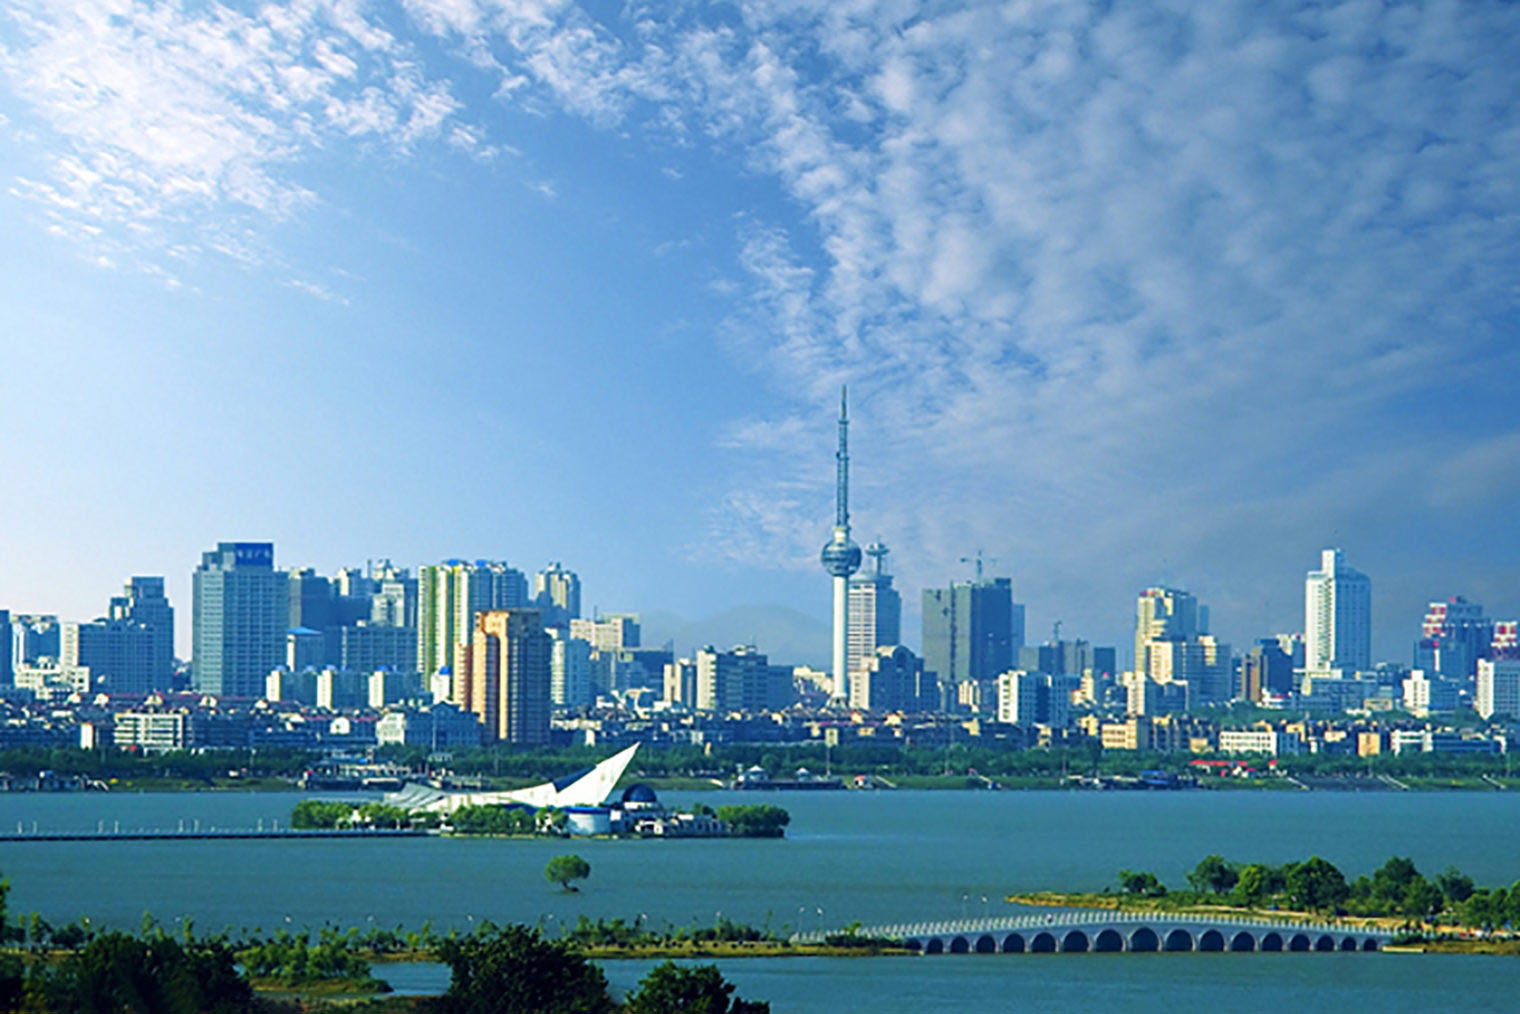 Twin city Xuzhou skyline